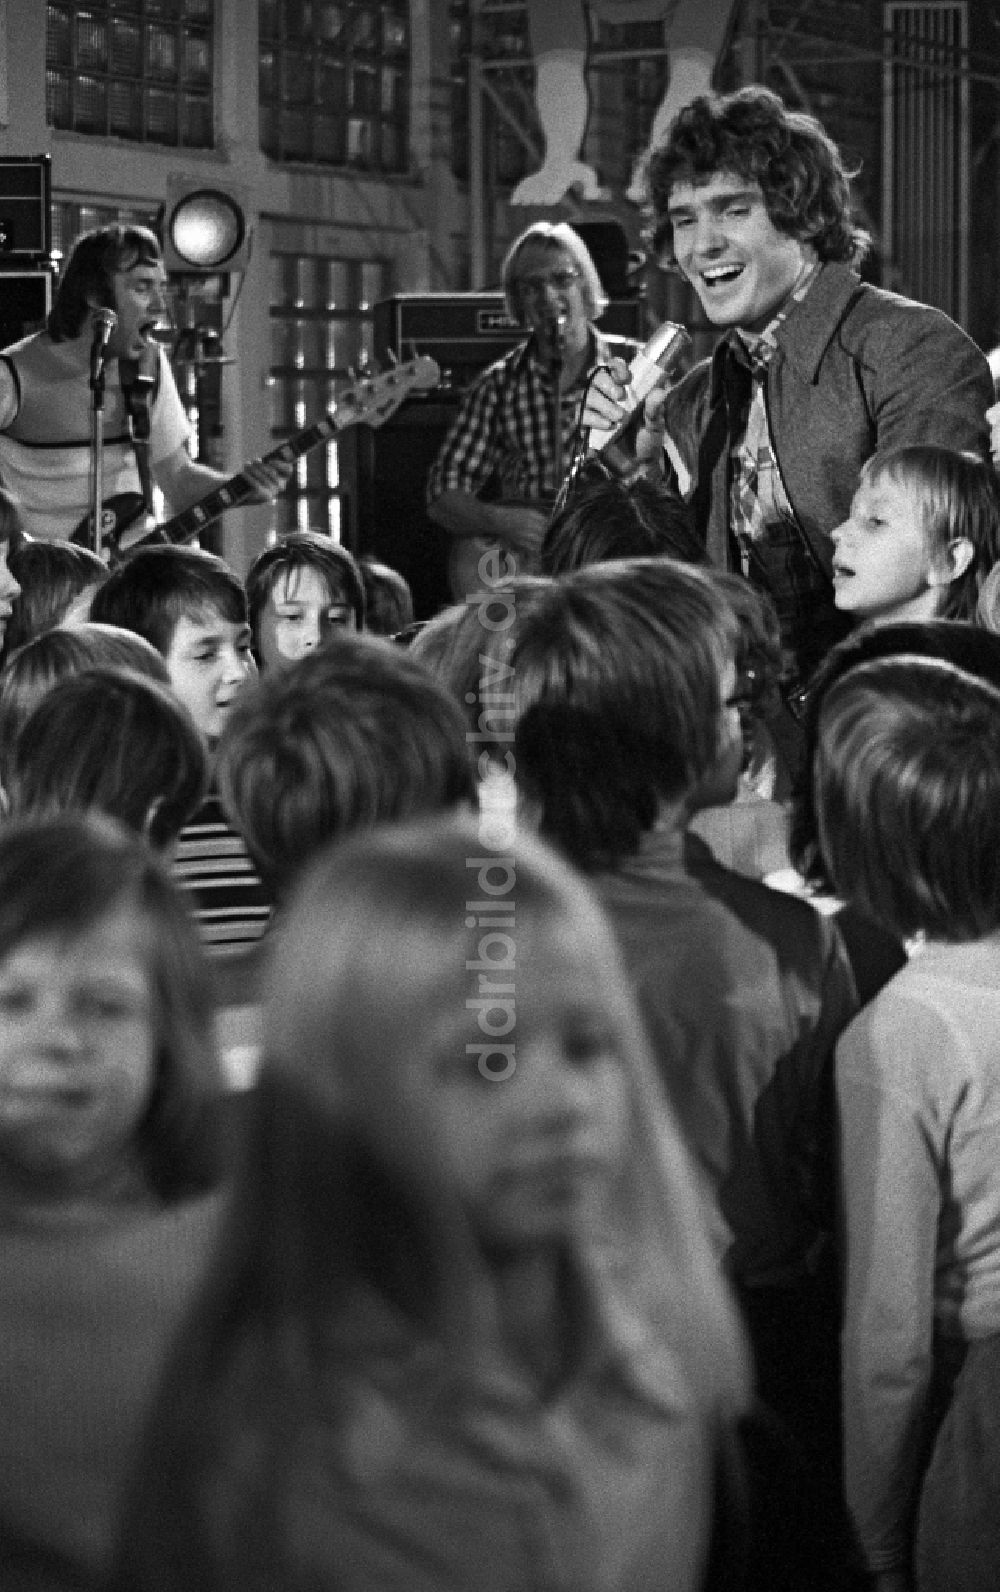 Berlin: Musiker Frank Schöbel singt mit einer Kindergruppe in Berlin, der ehemaligen Hauptstadt der DDR, Deutsche Demokratische Republik